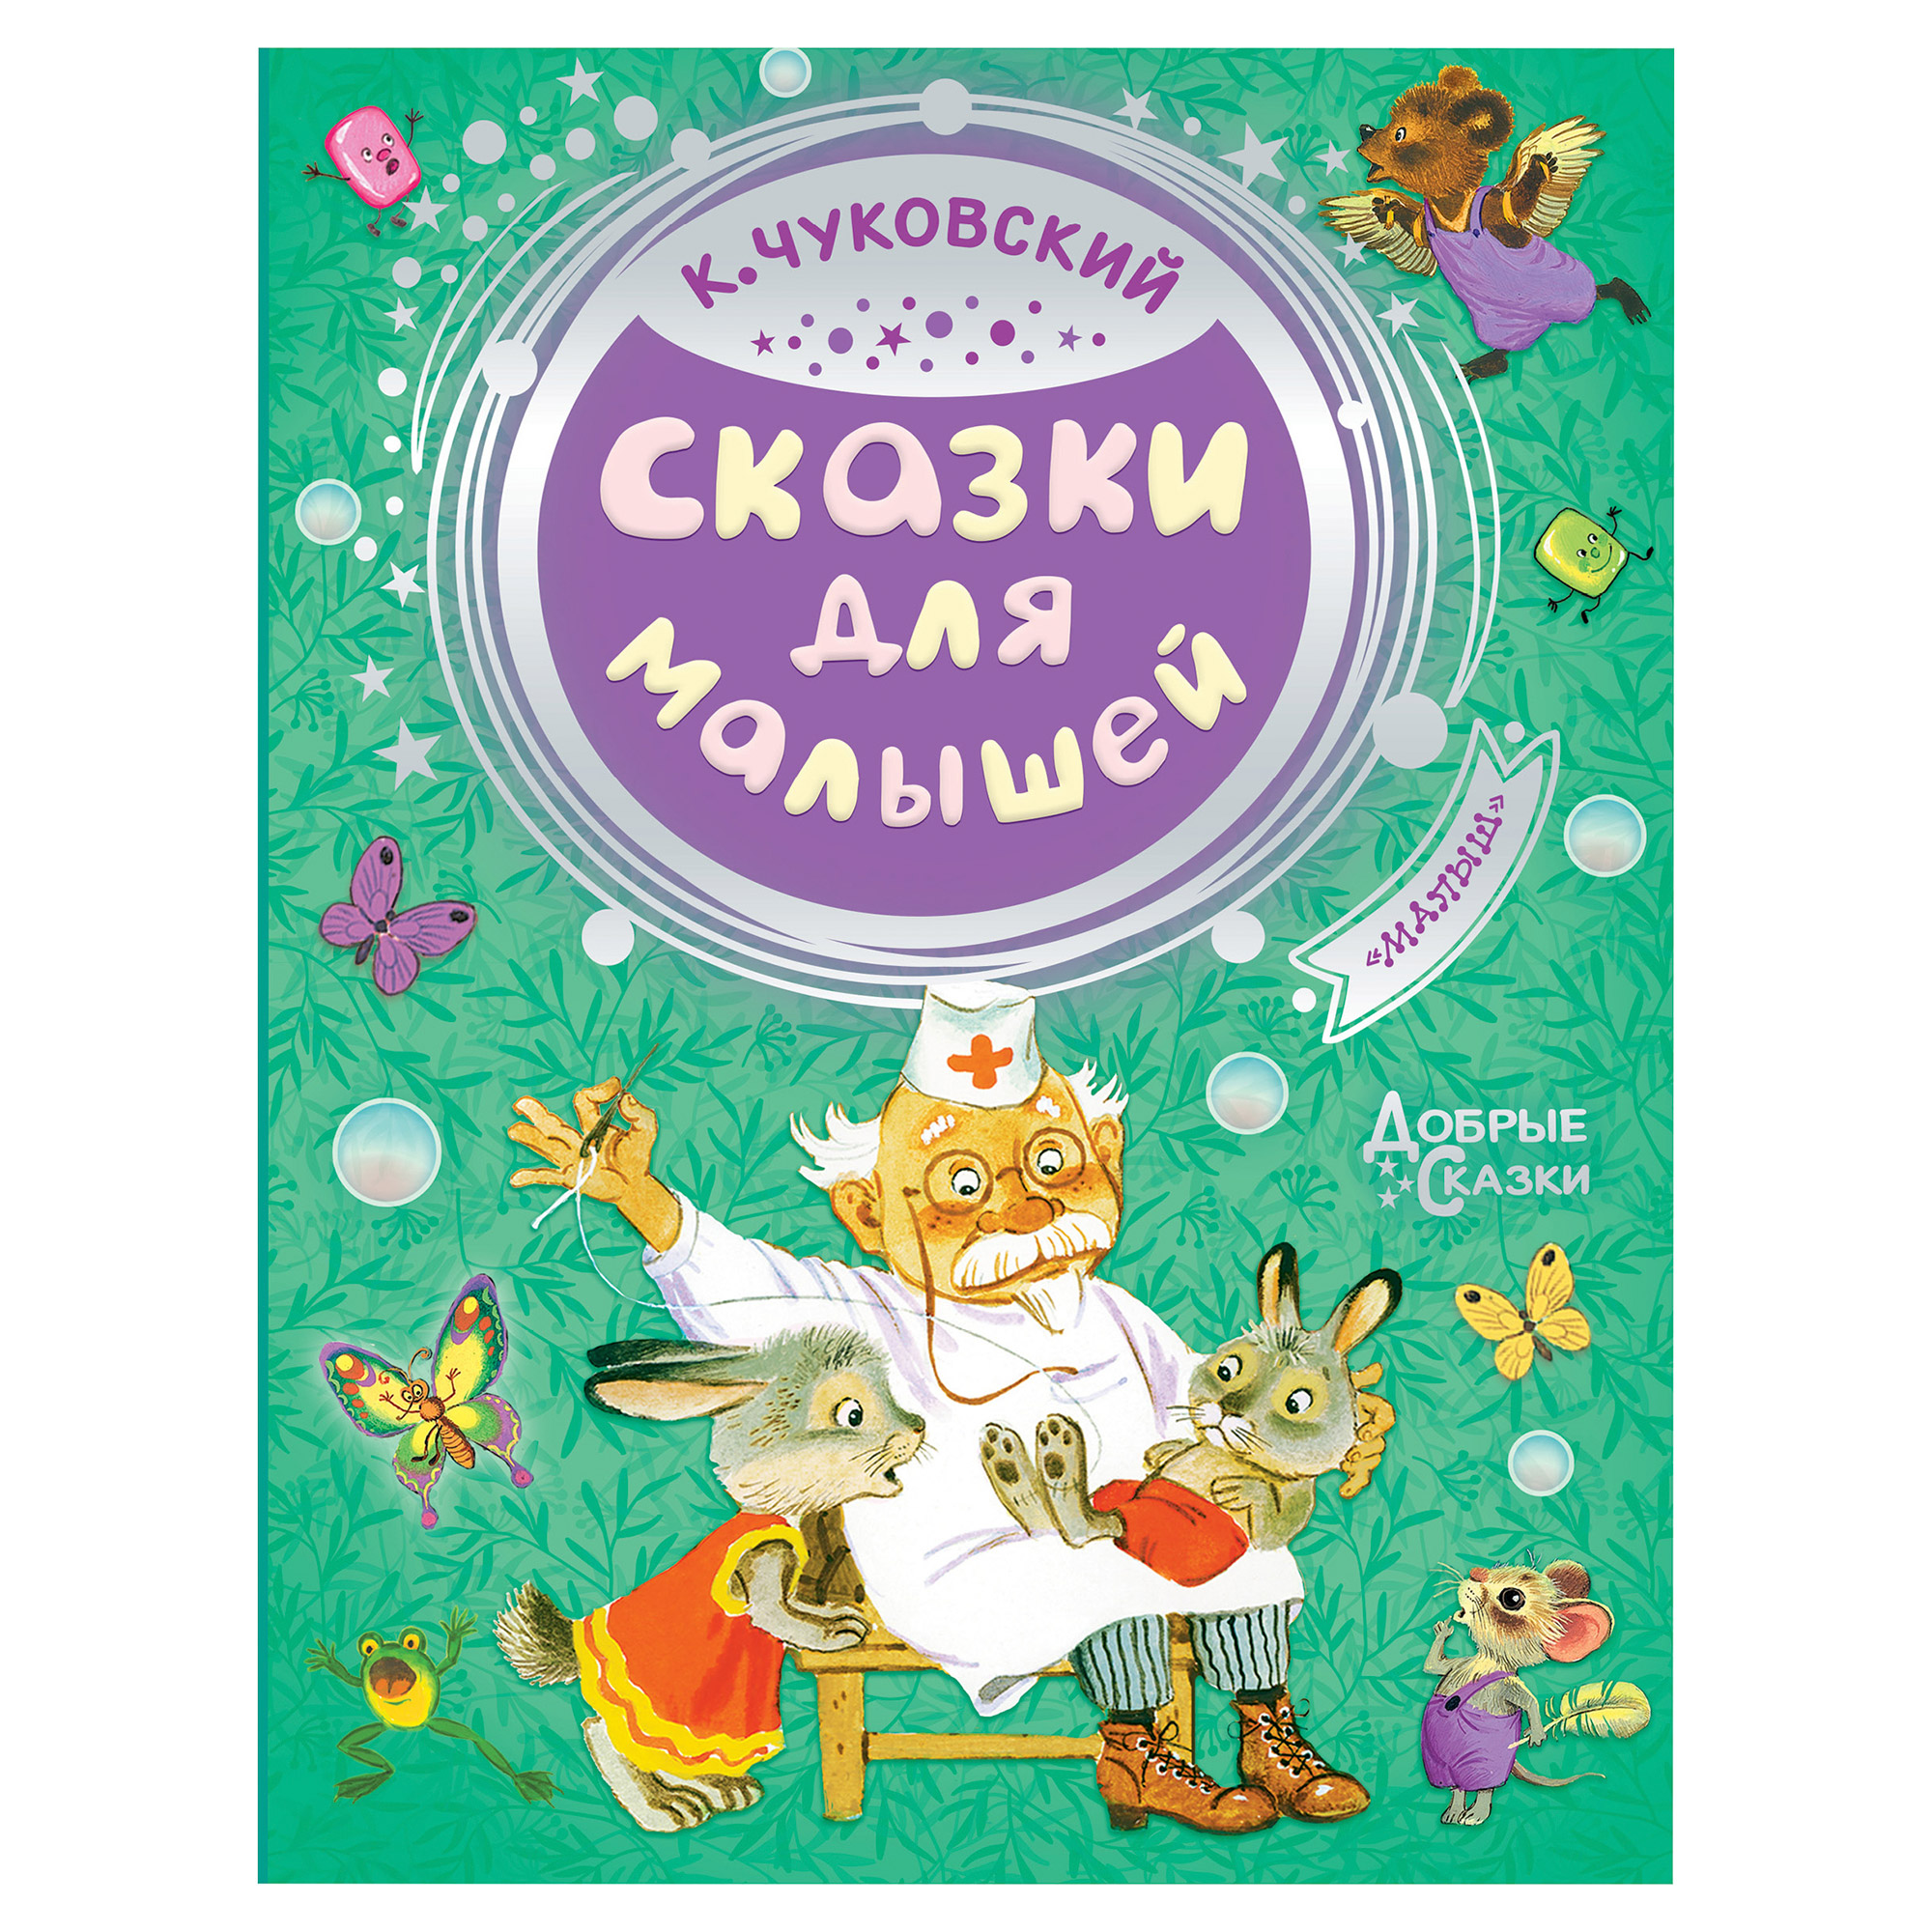 Книга АСТ Чуковский К.И. Сказки для малышей